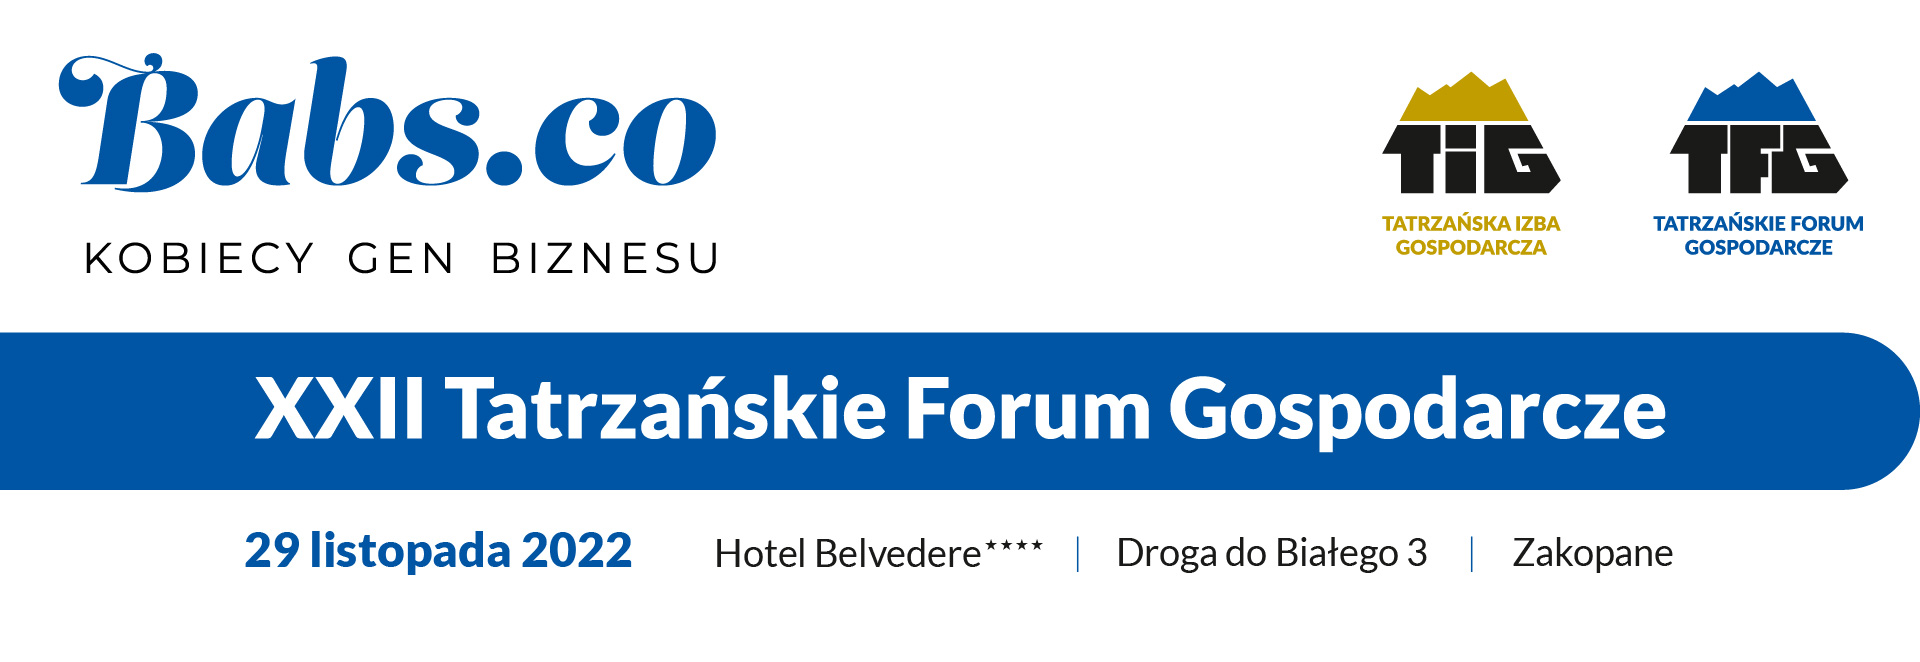 XXII Tatrzańskie Forum Gospodarcze